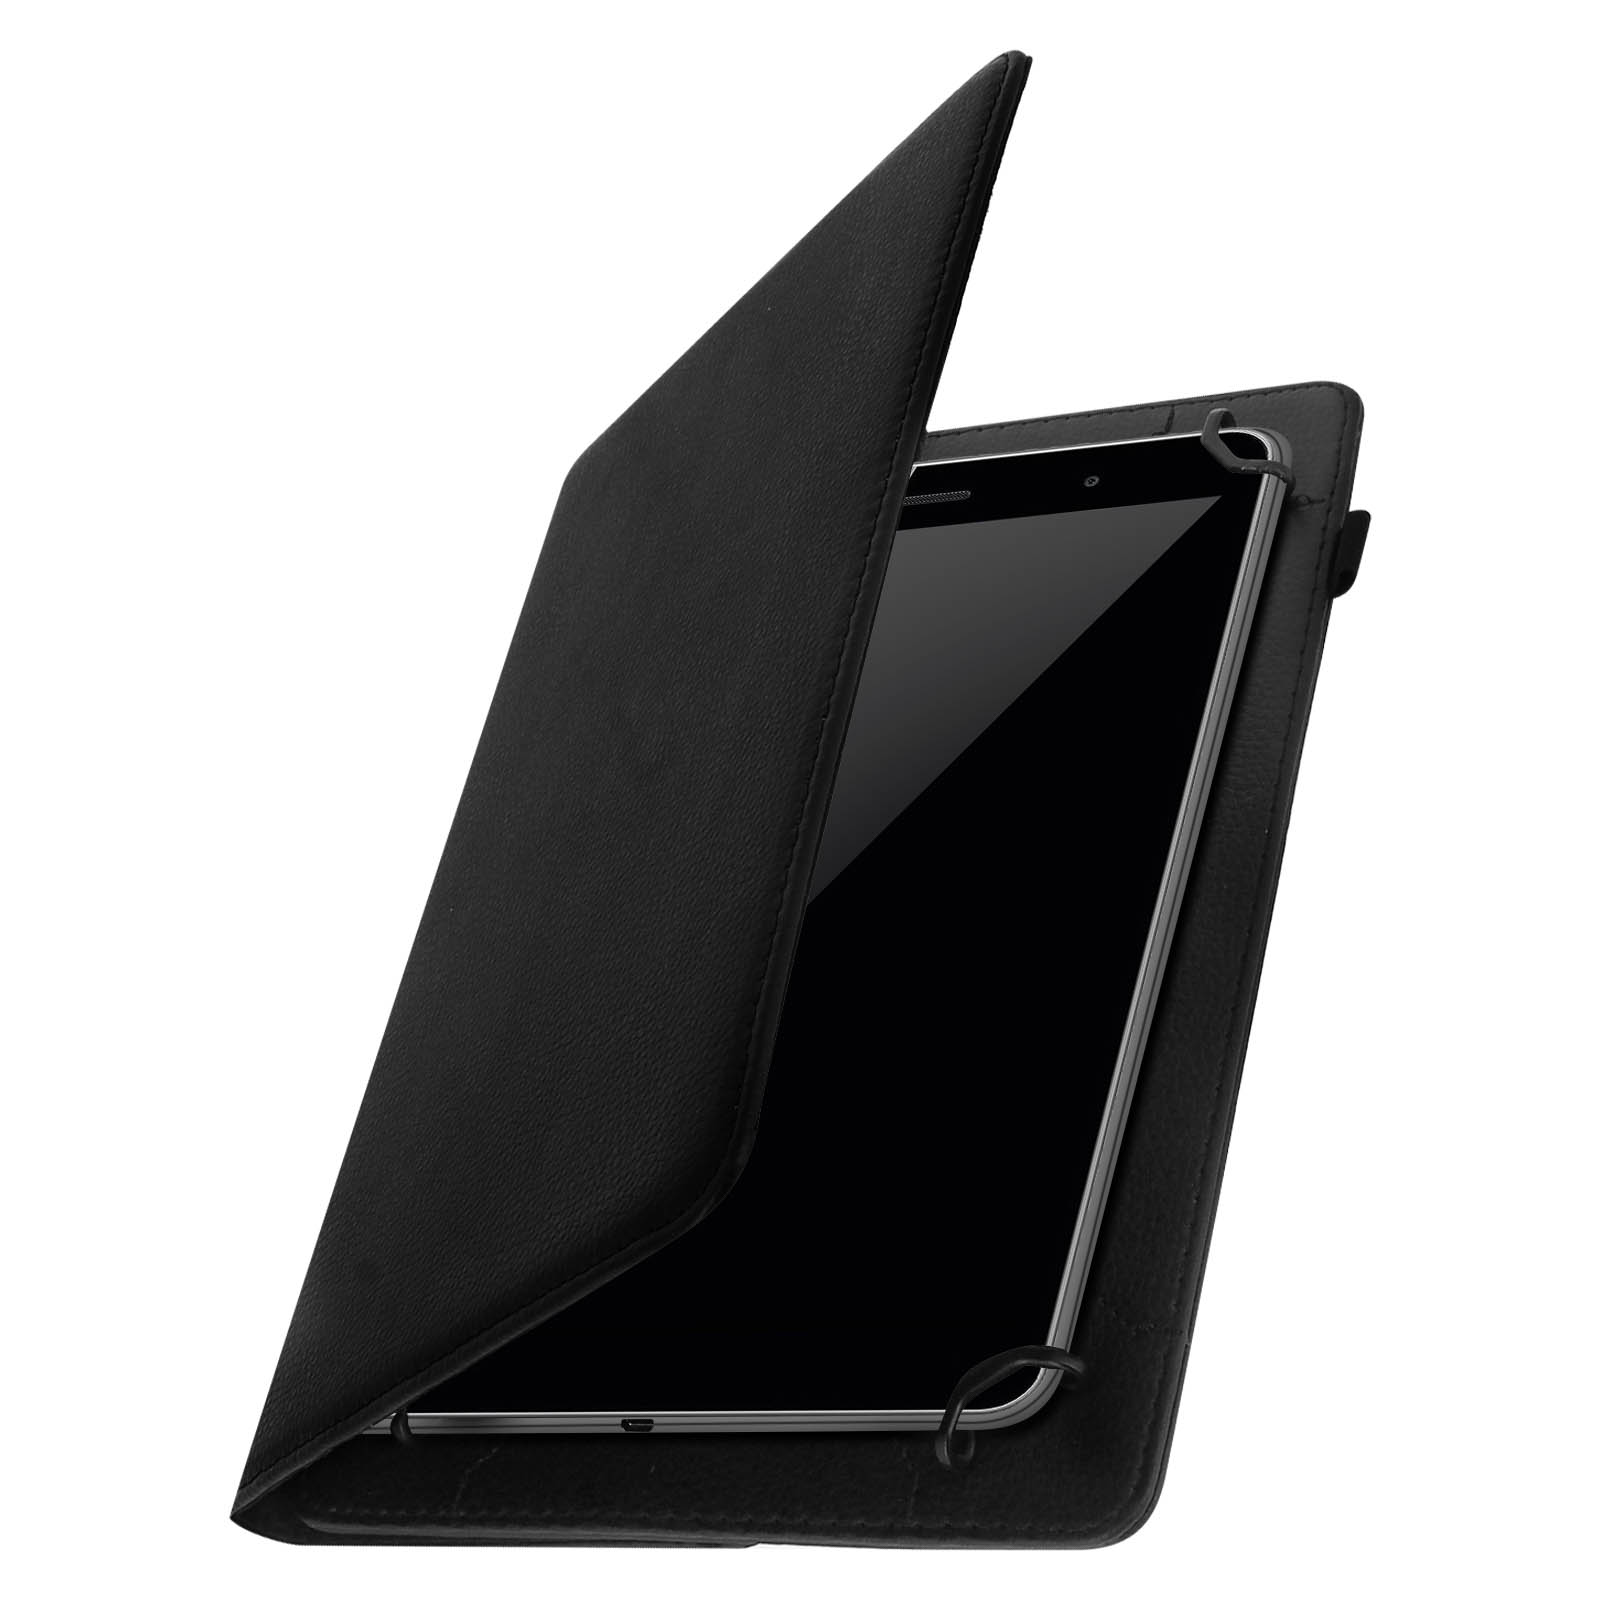 Support d'appui-tête CTA Digital universel pour tablette avec rotation à  360 degrés pour tablettes de 17.8 cm (7 pouces) à 35.6 cm (14 pouces) -  Noir 